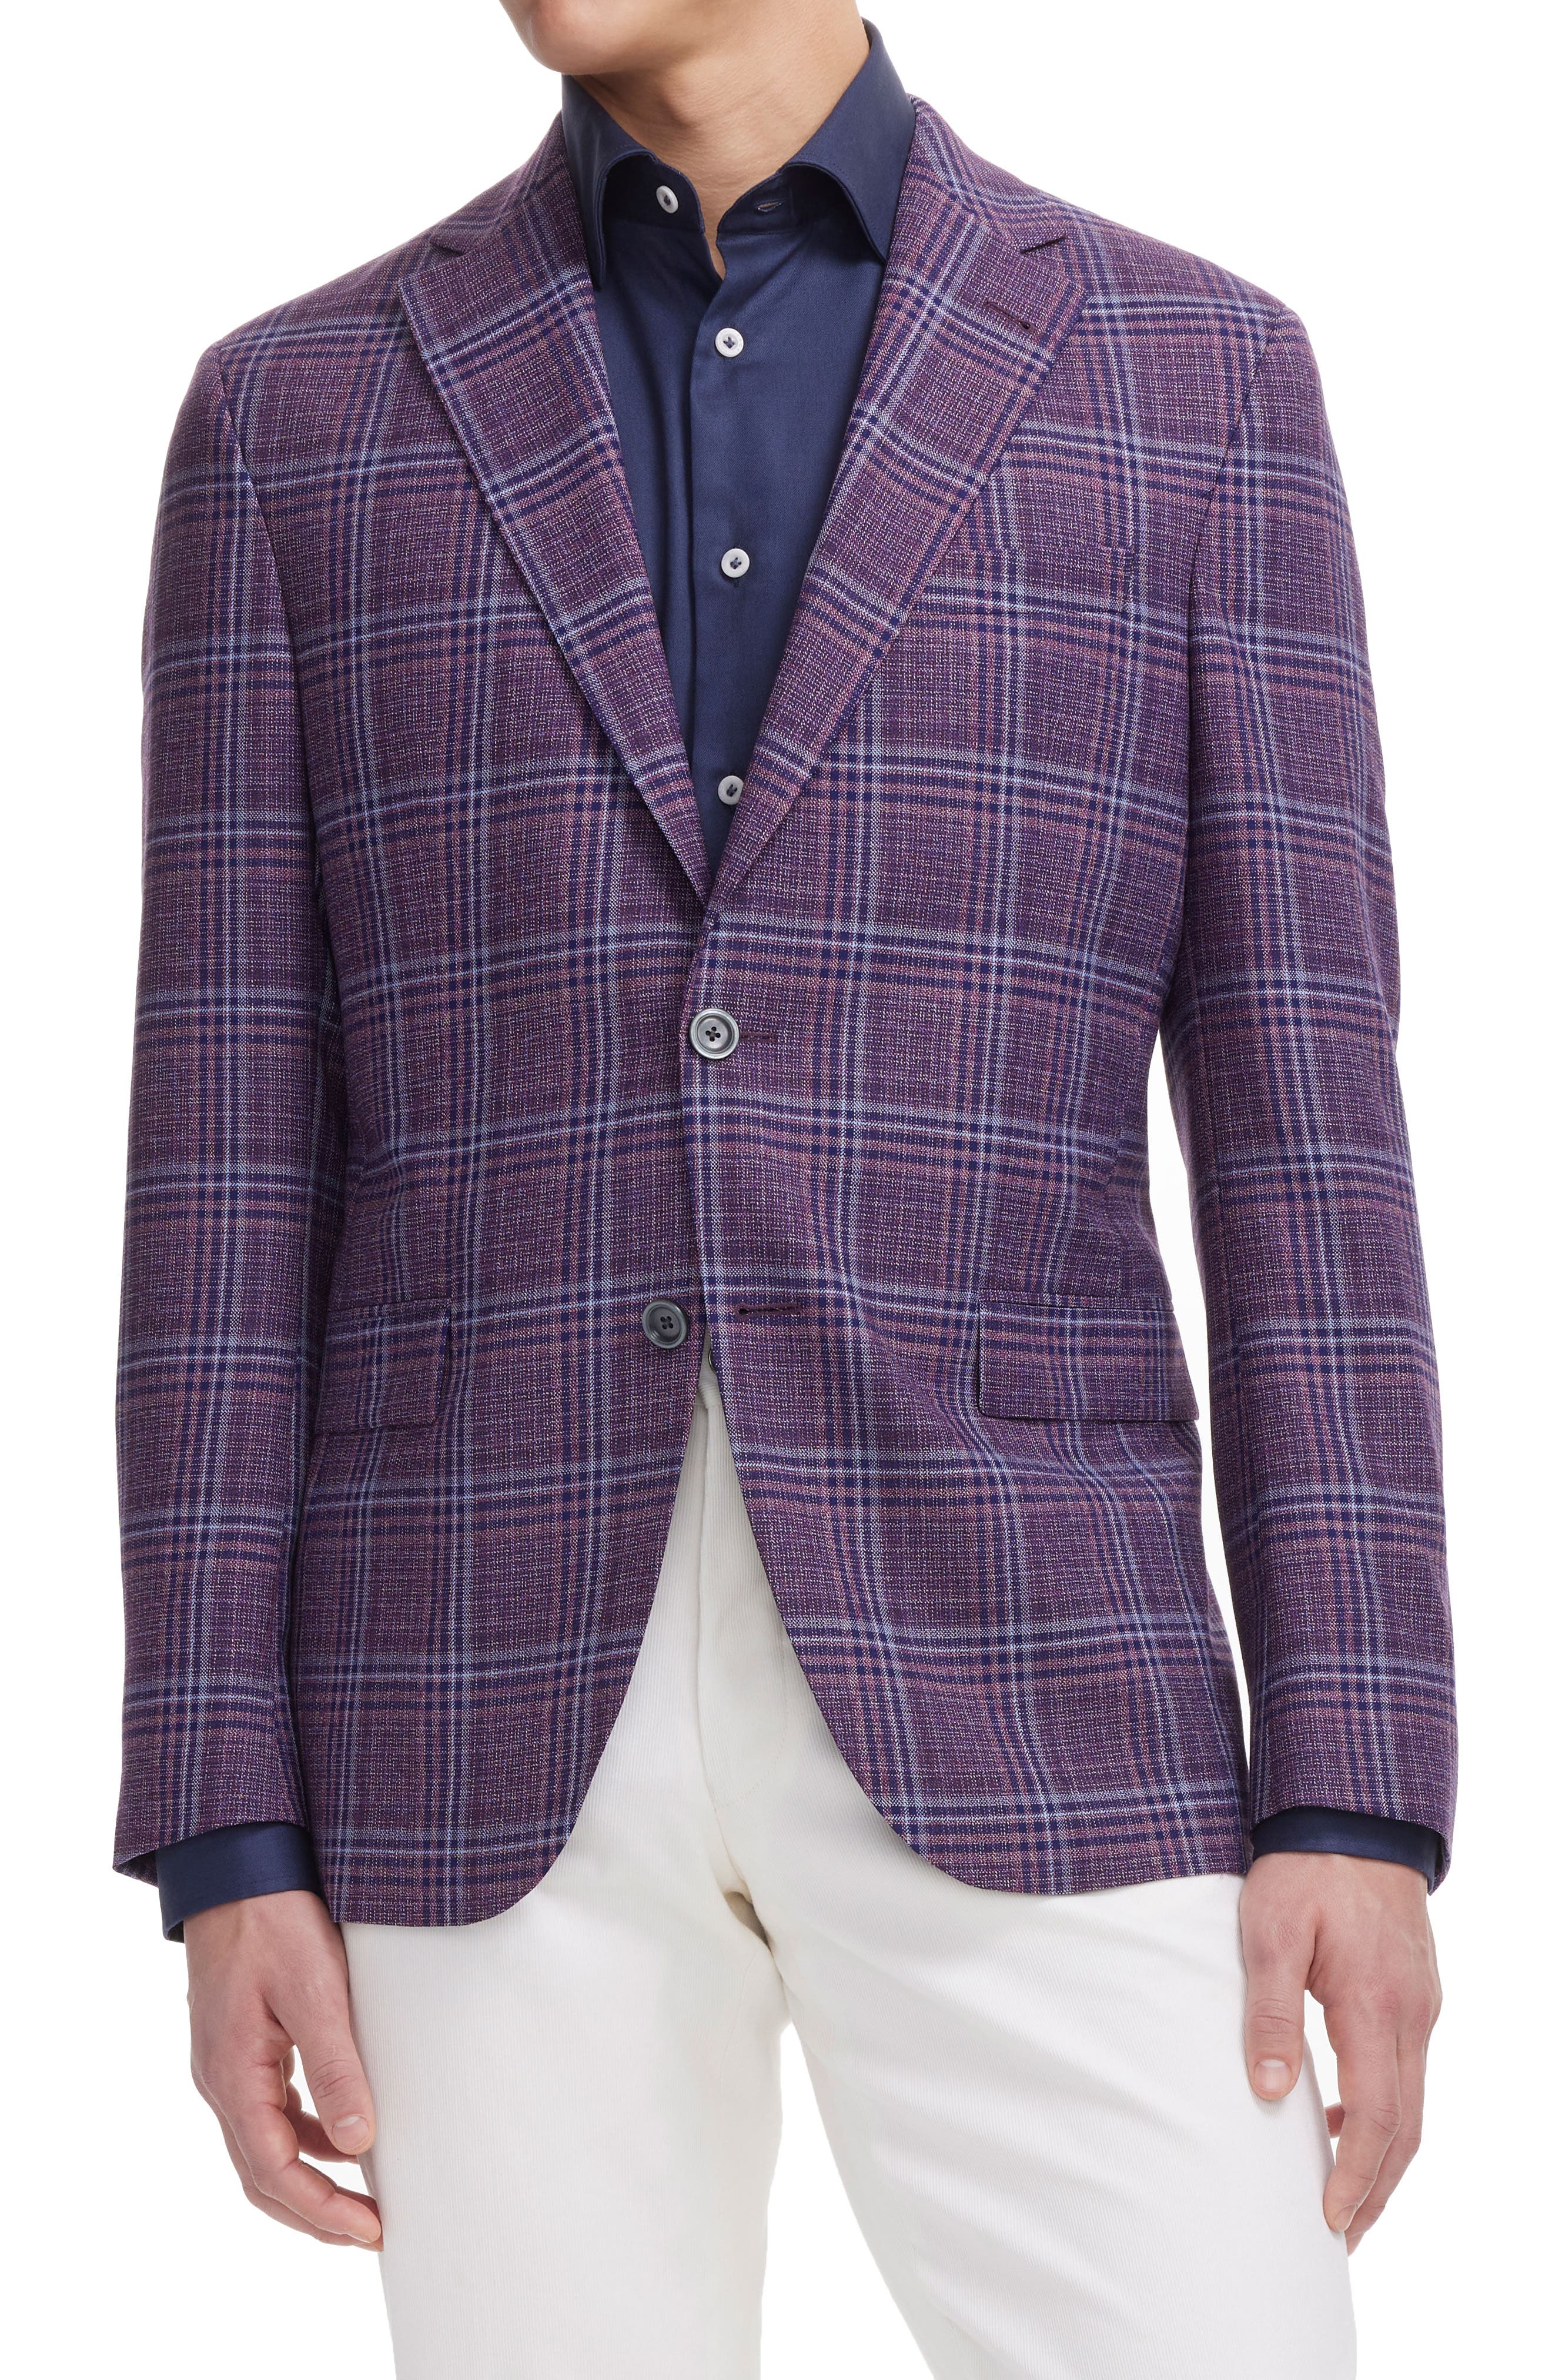 Men's Summer Plaid Blue&Beige Linen Cotton Blazer Jacket 2 Button Leisure Suit 